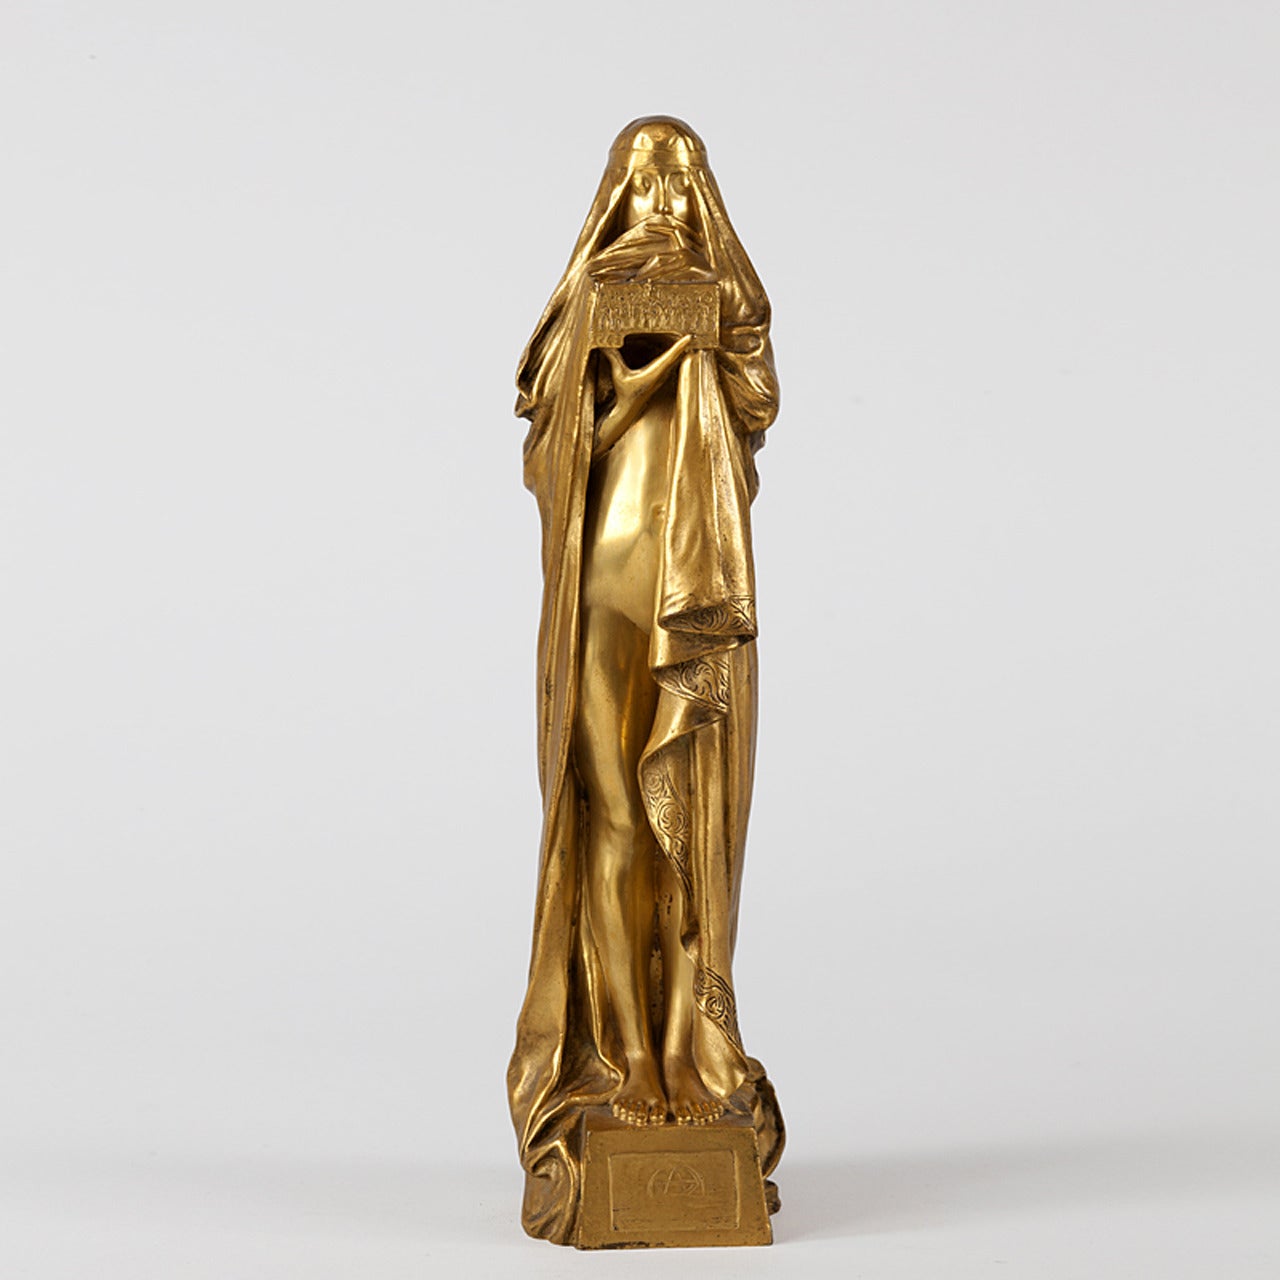 Fix-Masseau French Art Nouveau Gilt Bronze Sculpture “Le Secret”